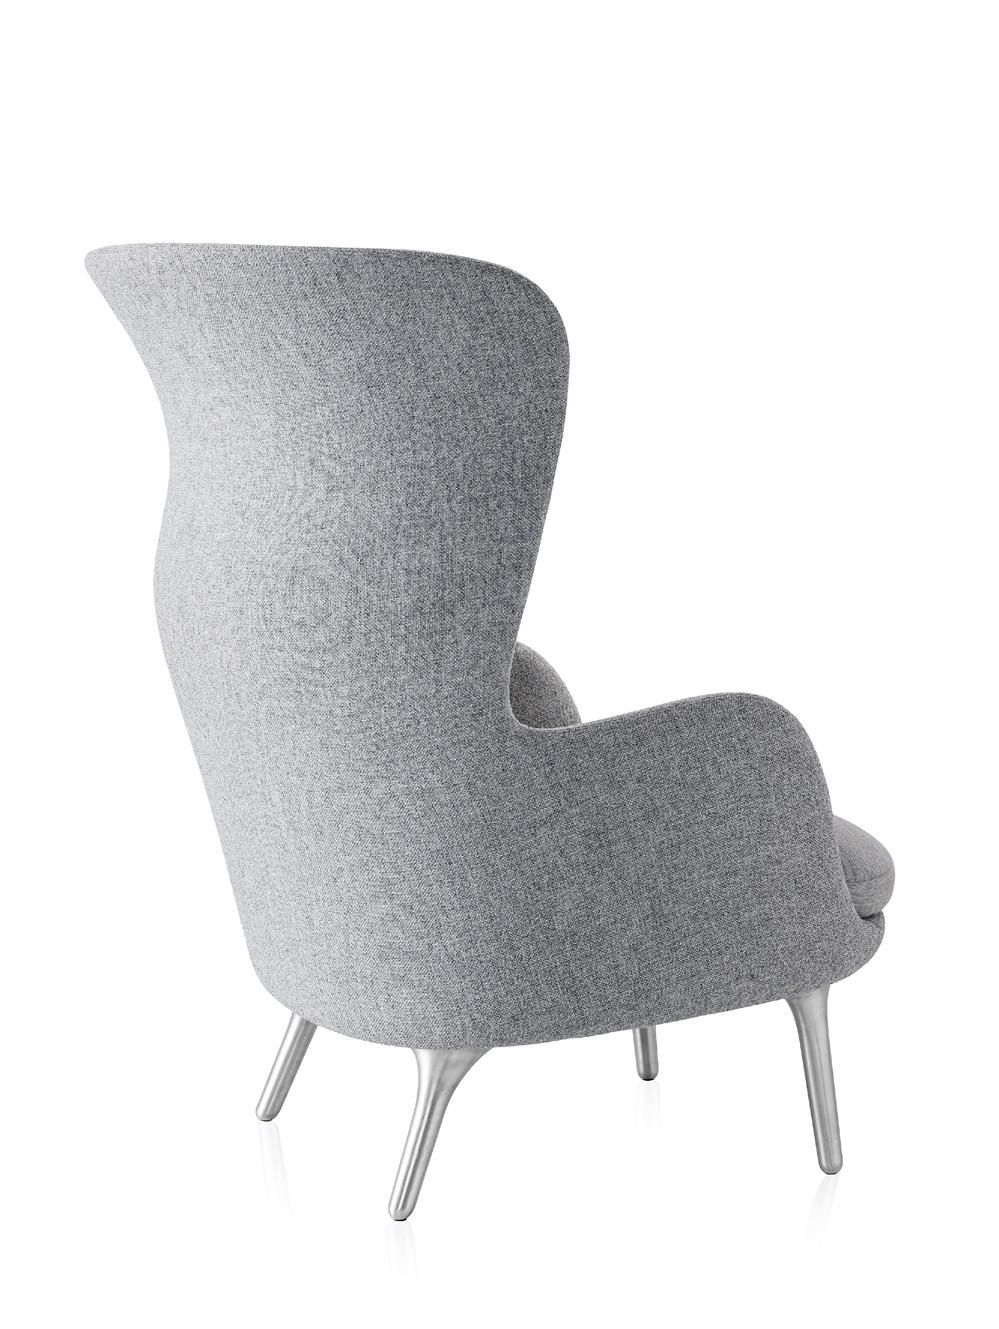 Ro Ro easy chair designed by Jaime Hayón for Fritz Hansen